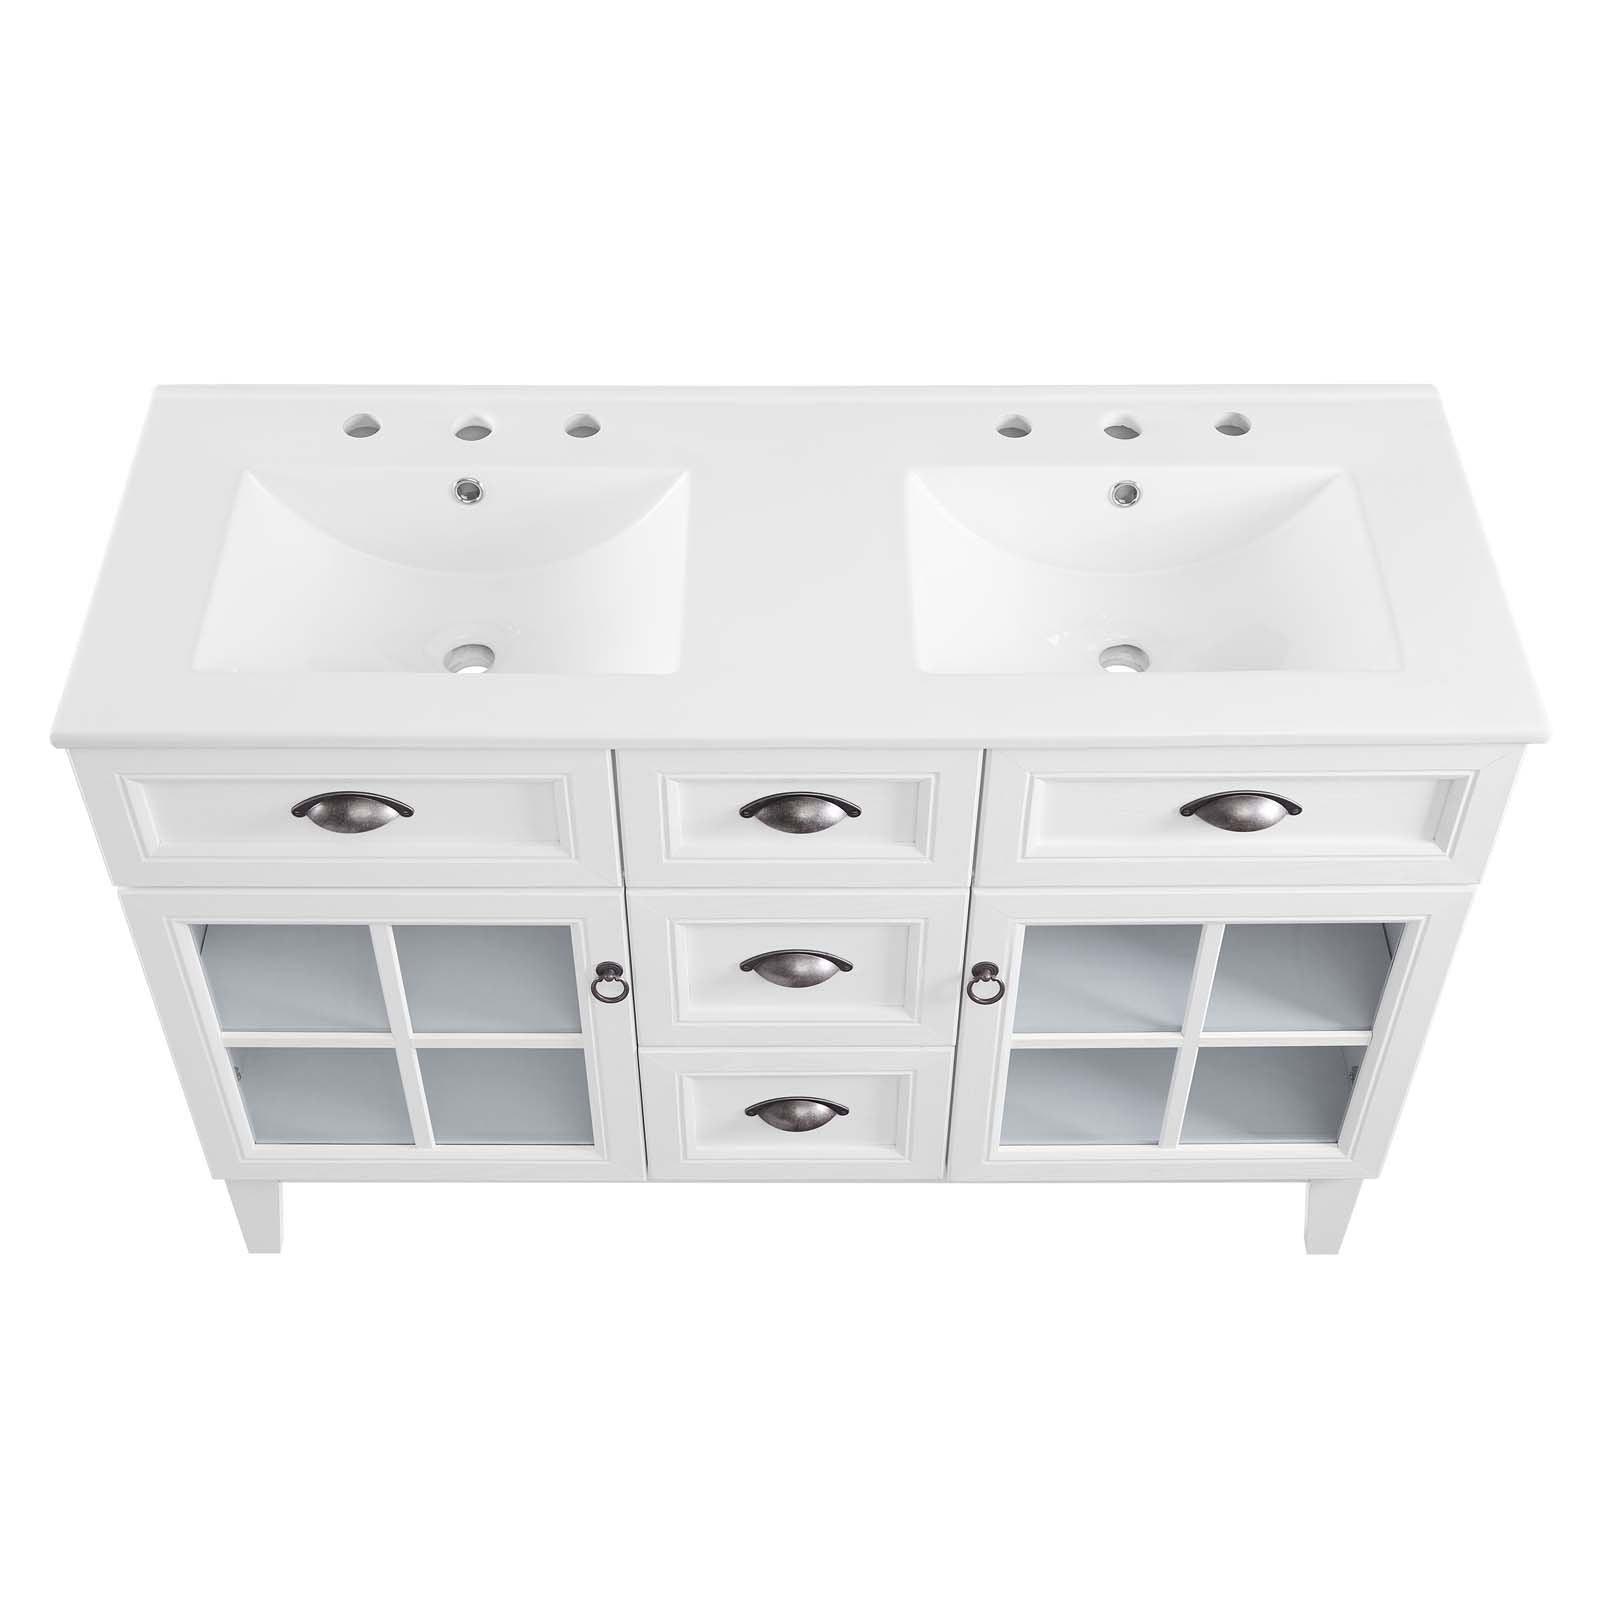 Isle 48" Double Bathroom Vanity Cabinet